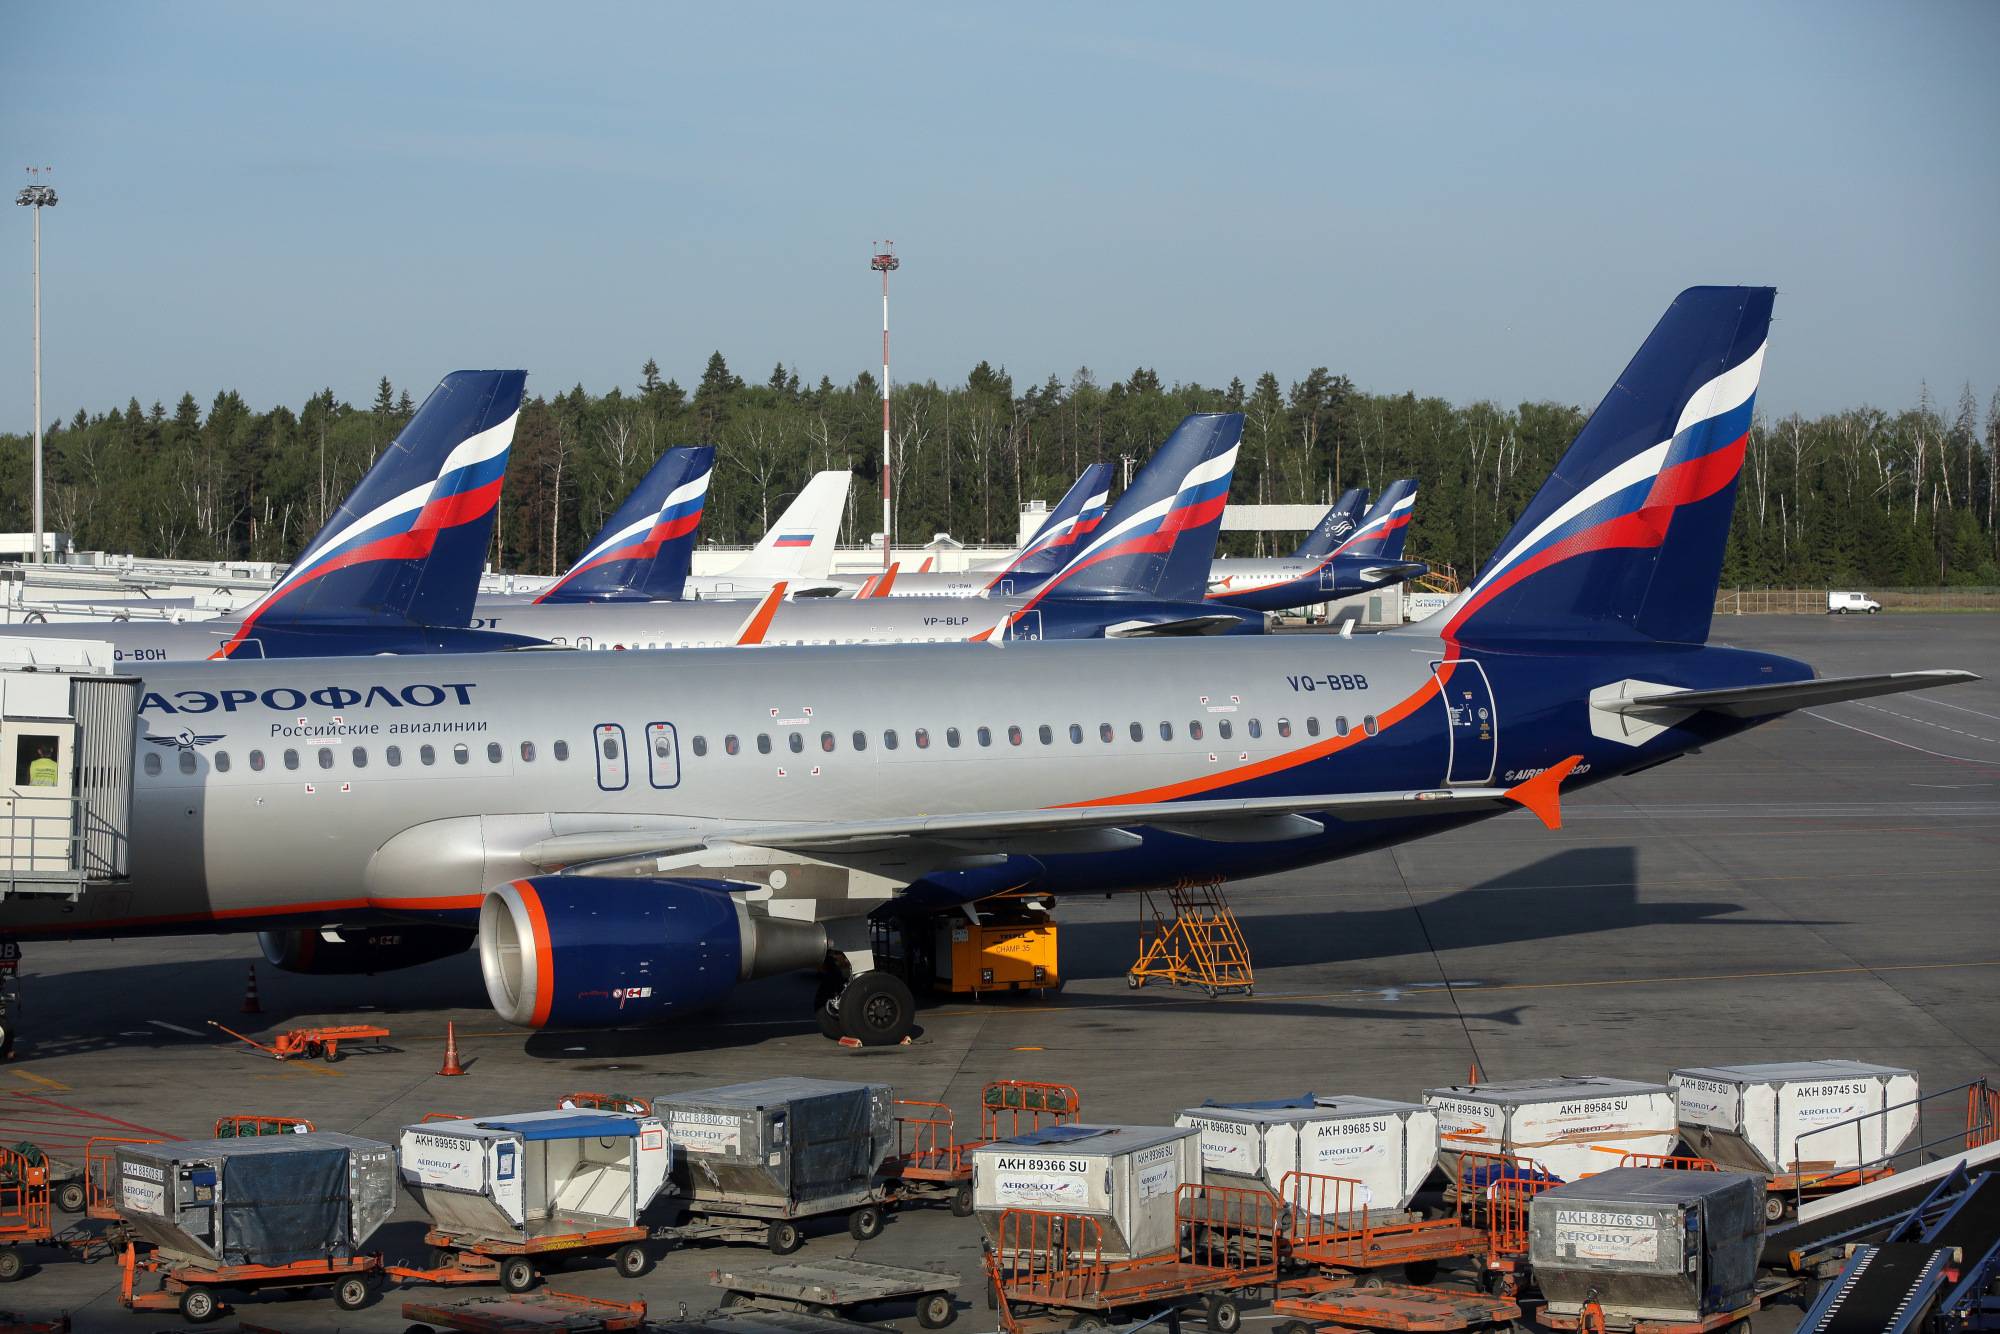 Авиапарк авиакомпании «россия» - какие самолеты летают в авиакомпании «россия»